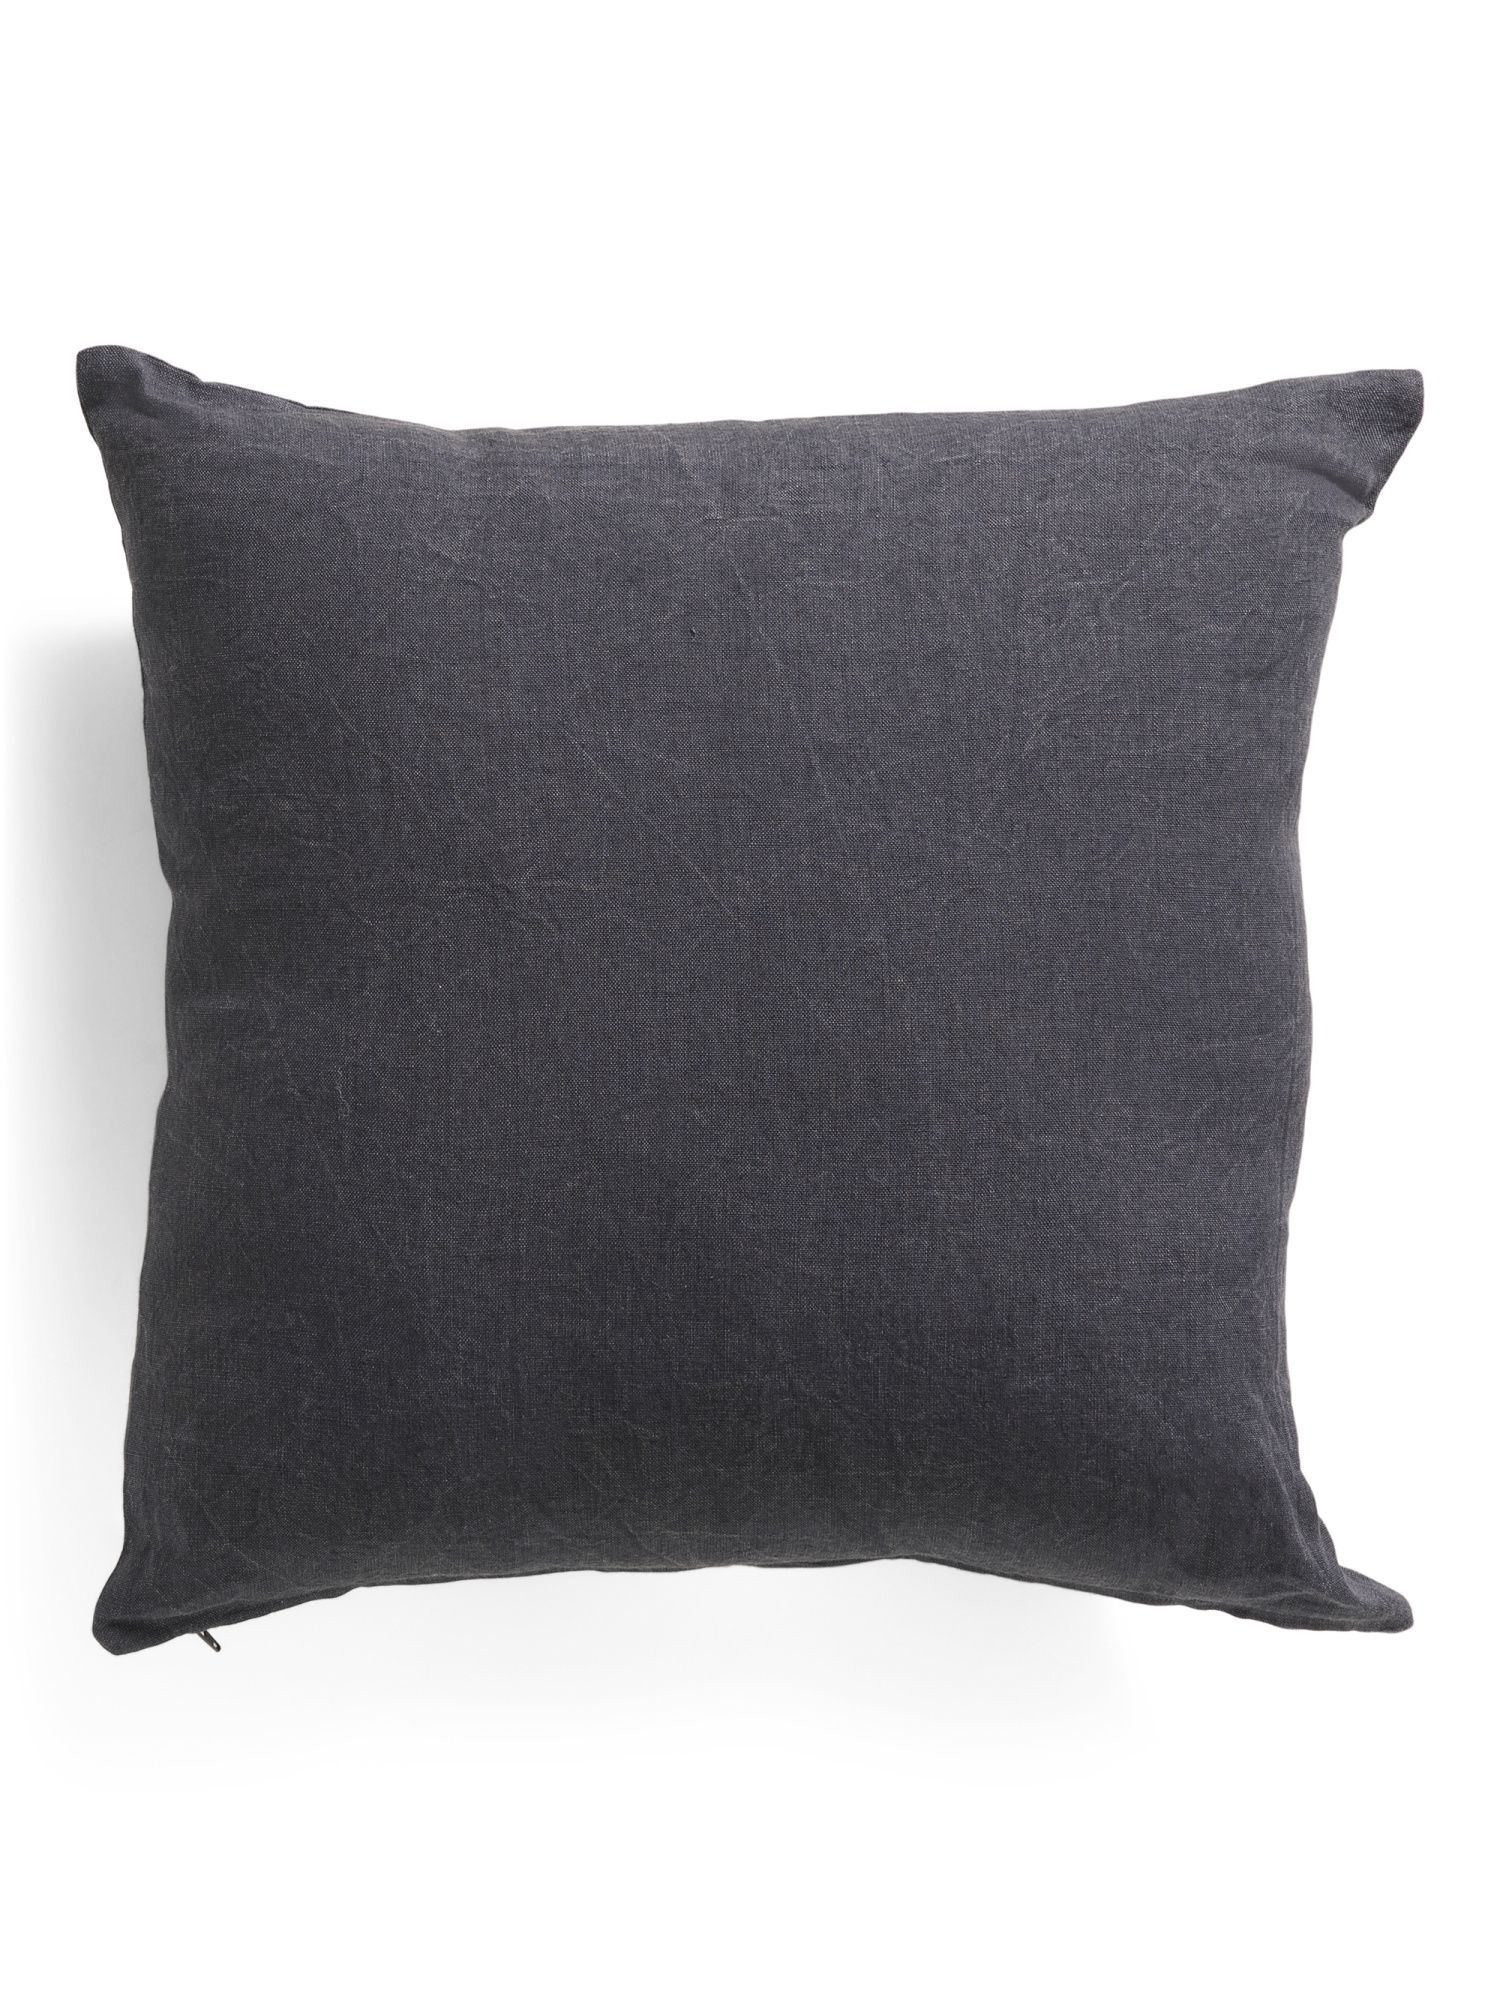 20x20 Linen Pillow | TJ Maxx